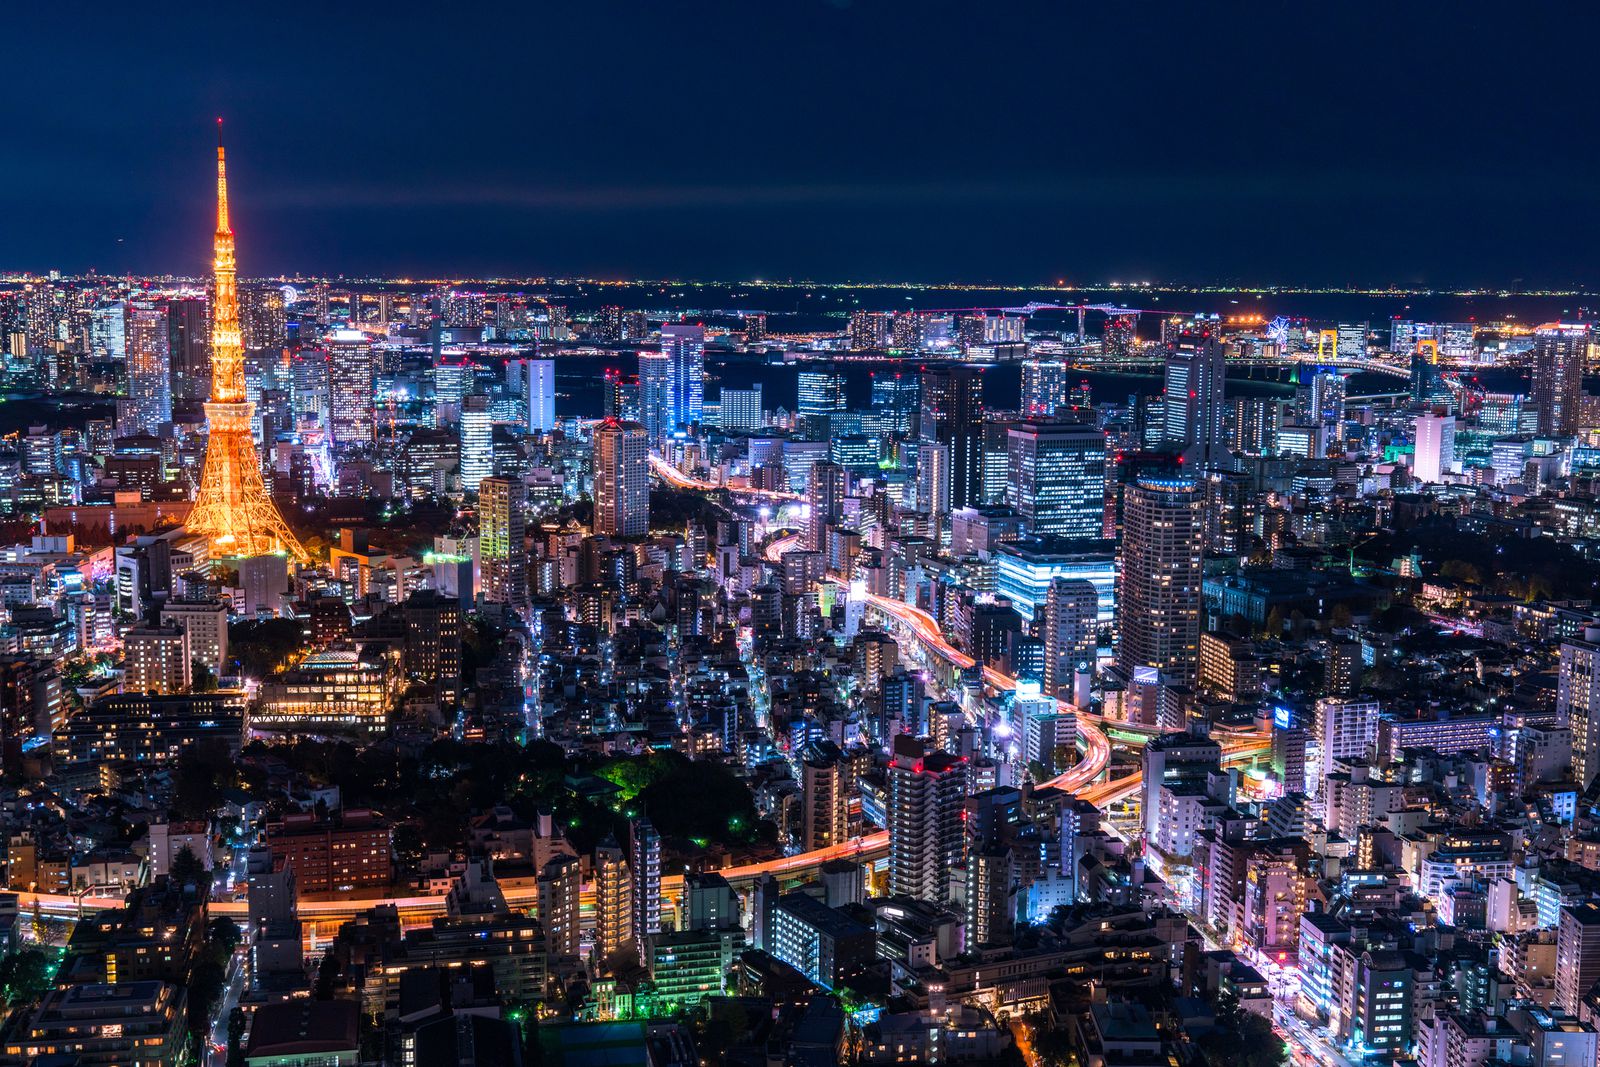 夏は夜景でロマンチックに 東京都内のおすすめ夜景スポット14選をご紹介 Retrip リトリップ